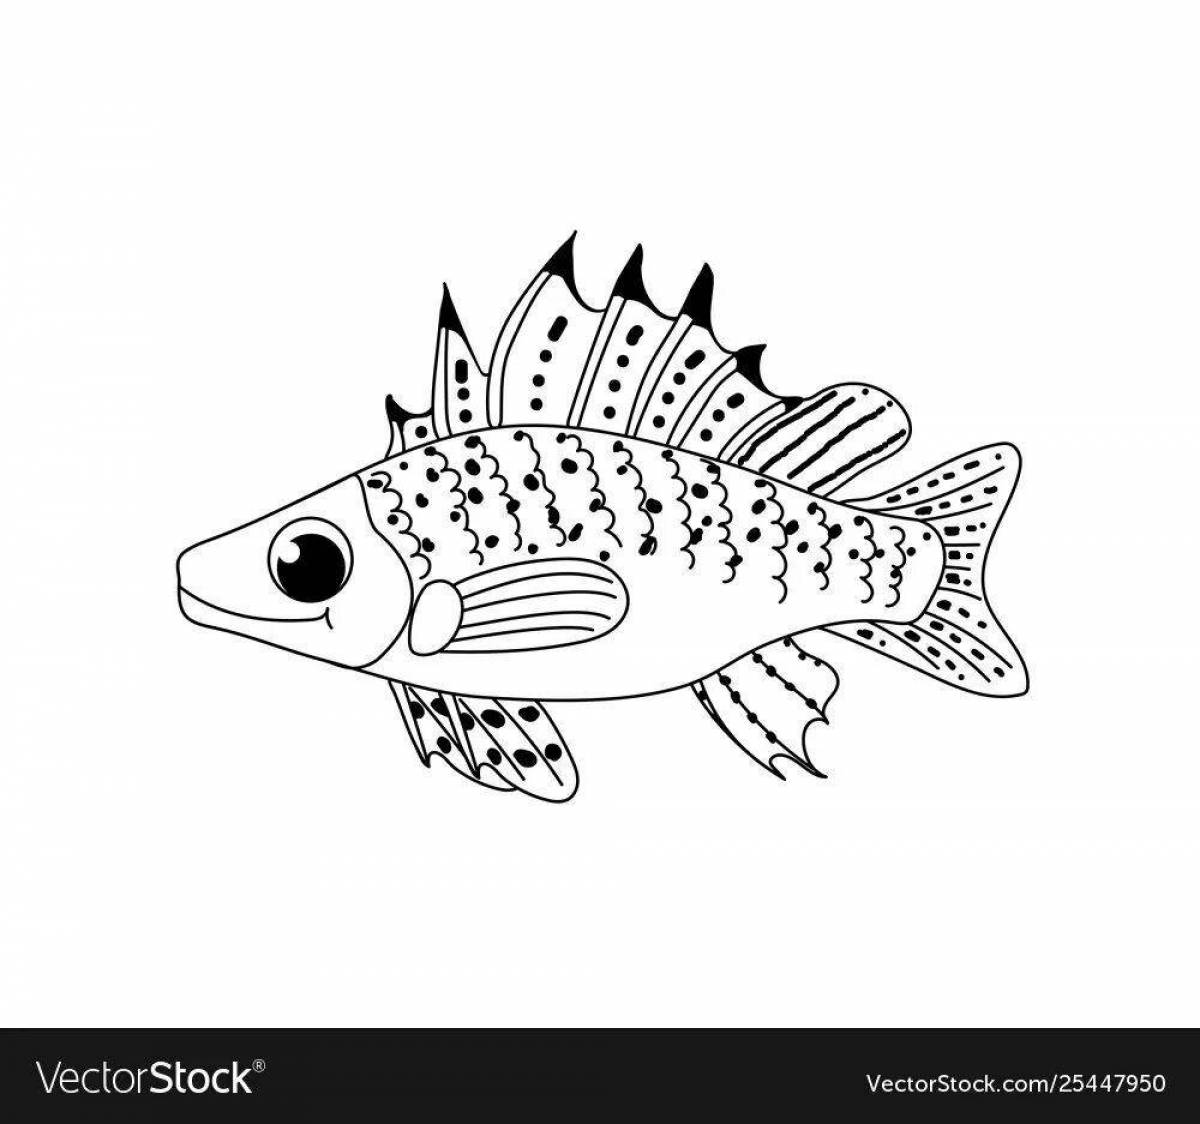 Раскраска впечатляющая рыба-ерш